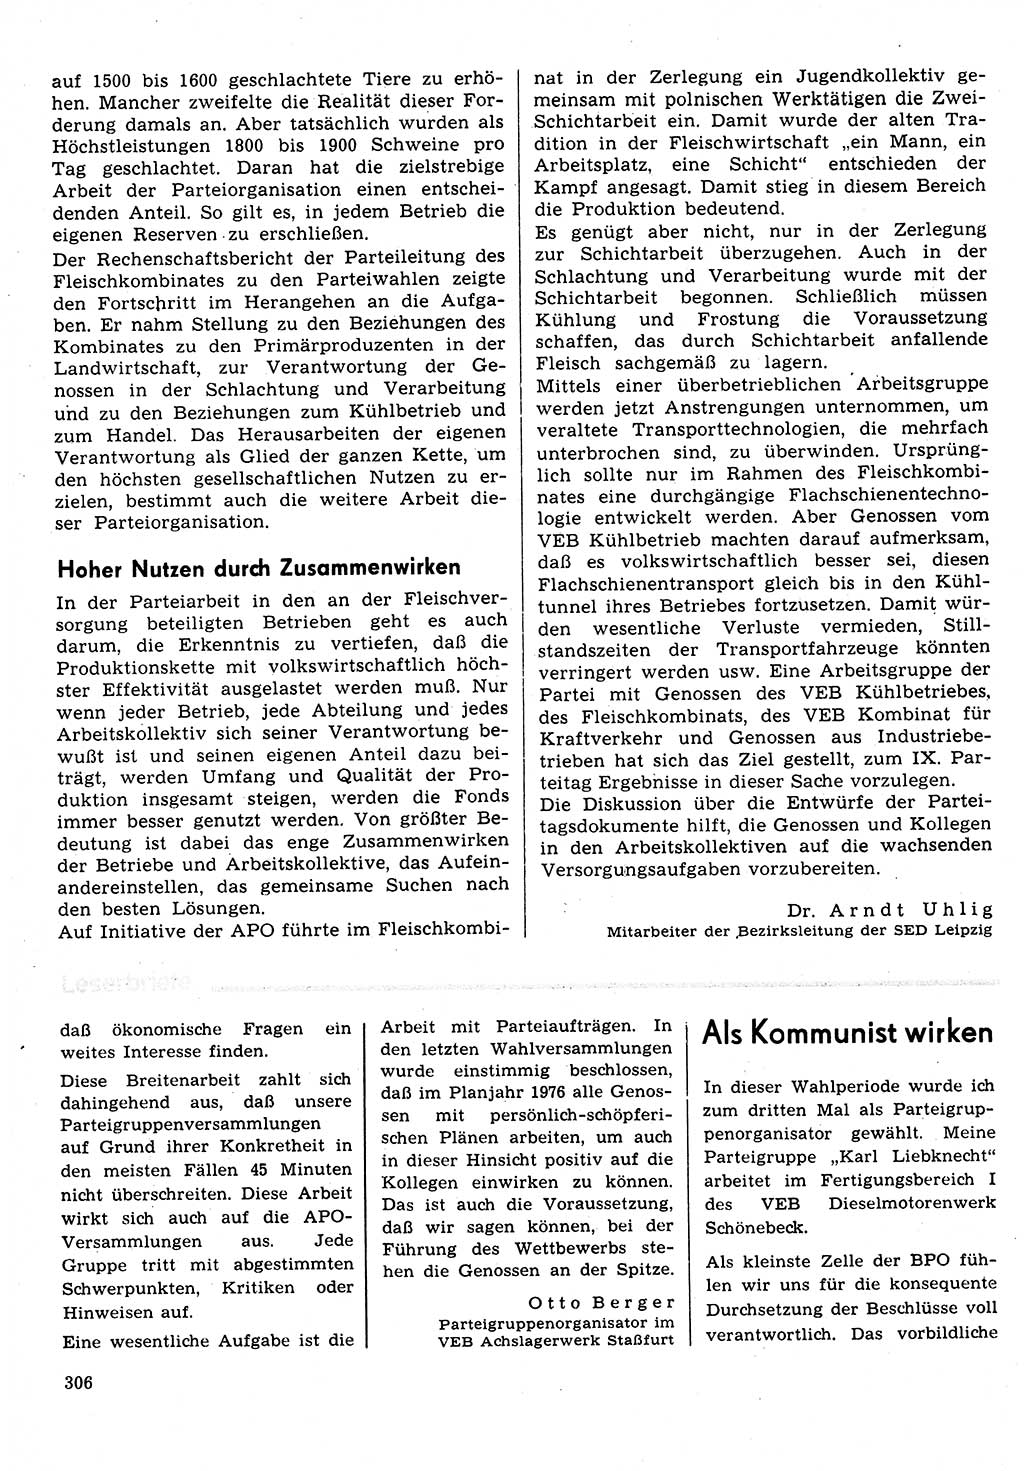 Neuer Weg (NW), Organ des Zentralkomitees (ZK) der SED (Sozialistische Einheitspartei Deutschlands) für Fragen des Parteilebens, 31. Jahrgang [Deutsche Demokratische Republik (DDR)] 1976, Seite 306 (NW ZK SED DDR 1976, S. 306)